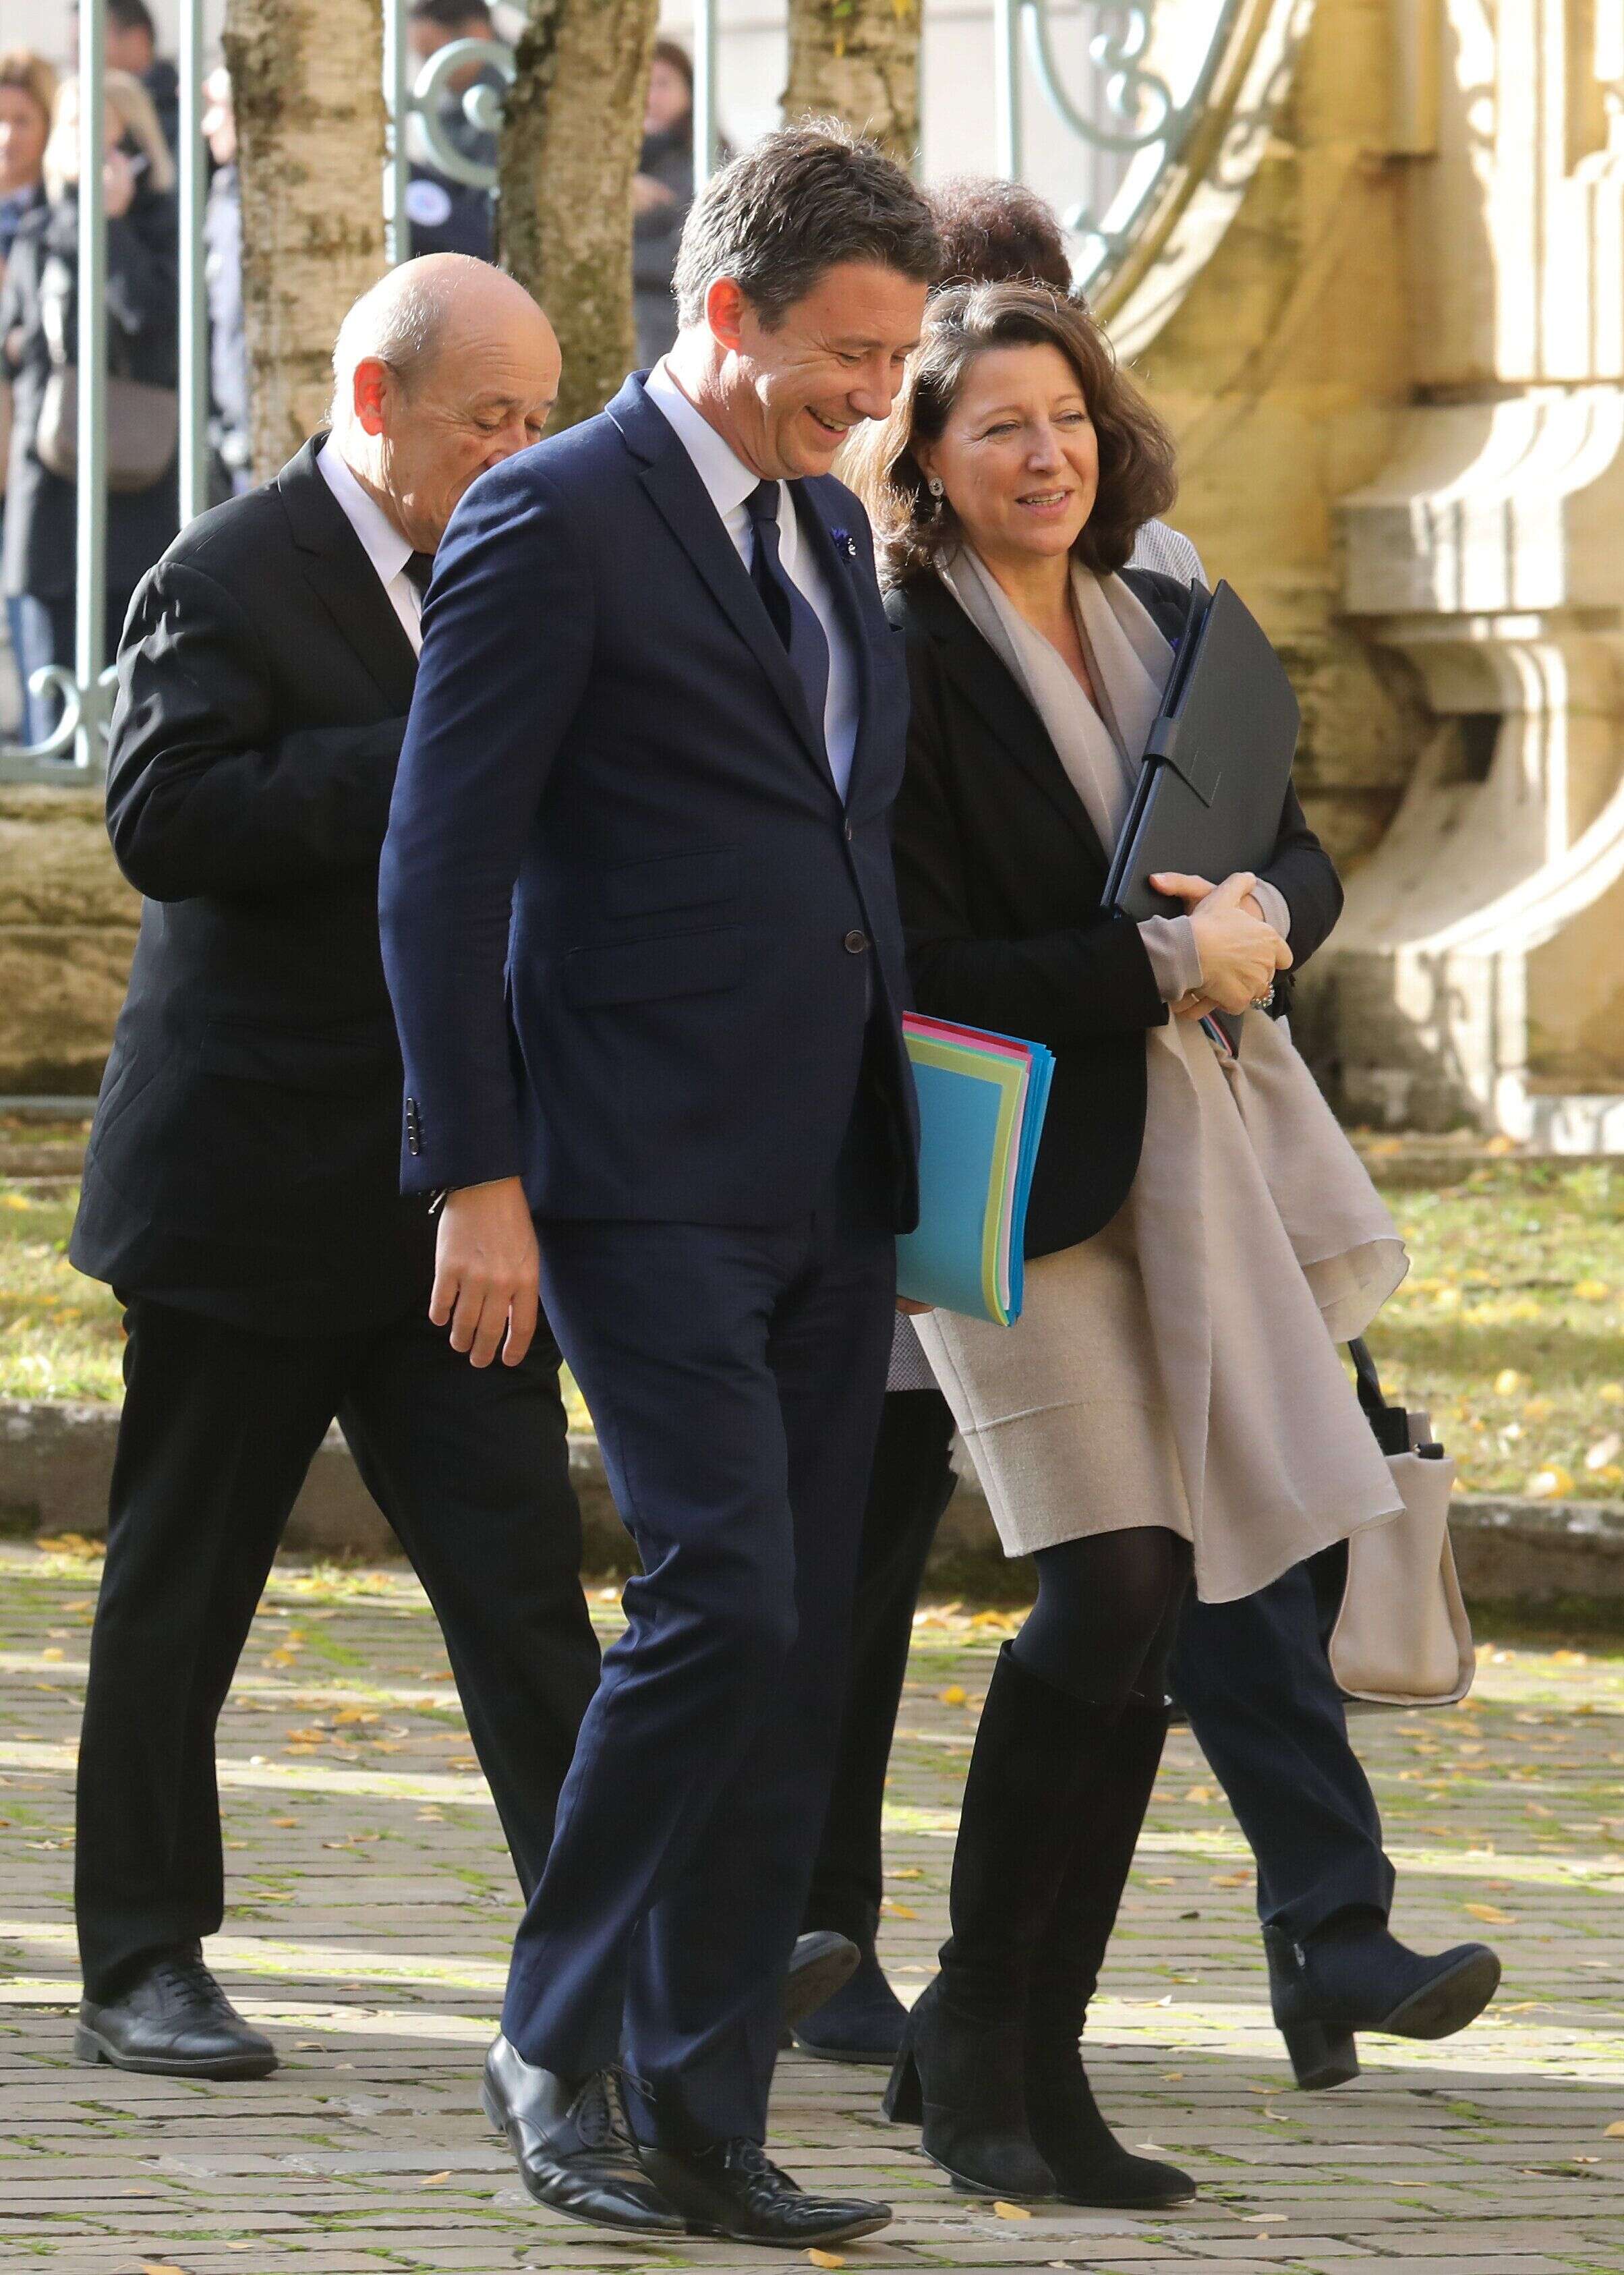 Image d'illustration - Benjamin Griveaux et Agnès Buzyn au gouvernement, le 7 novembre 2018